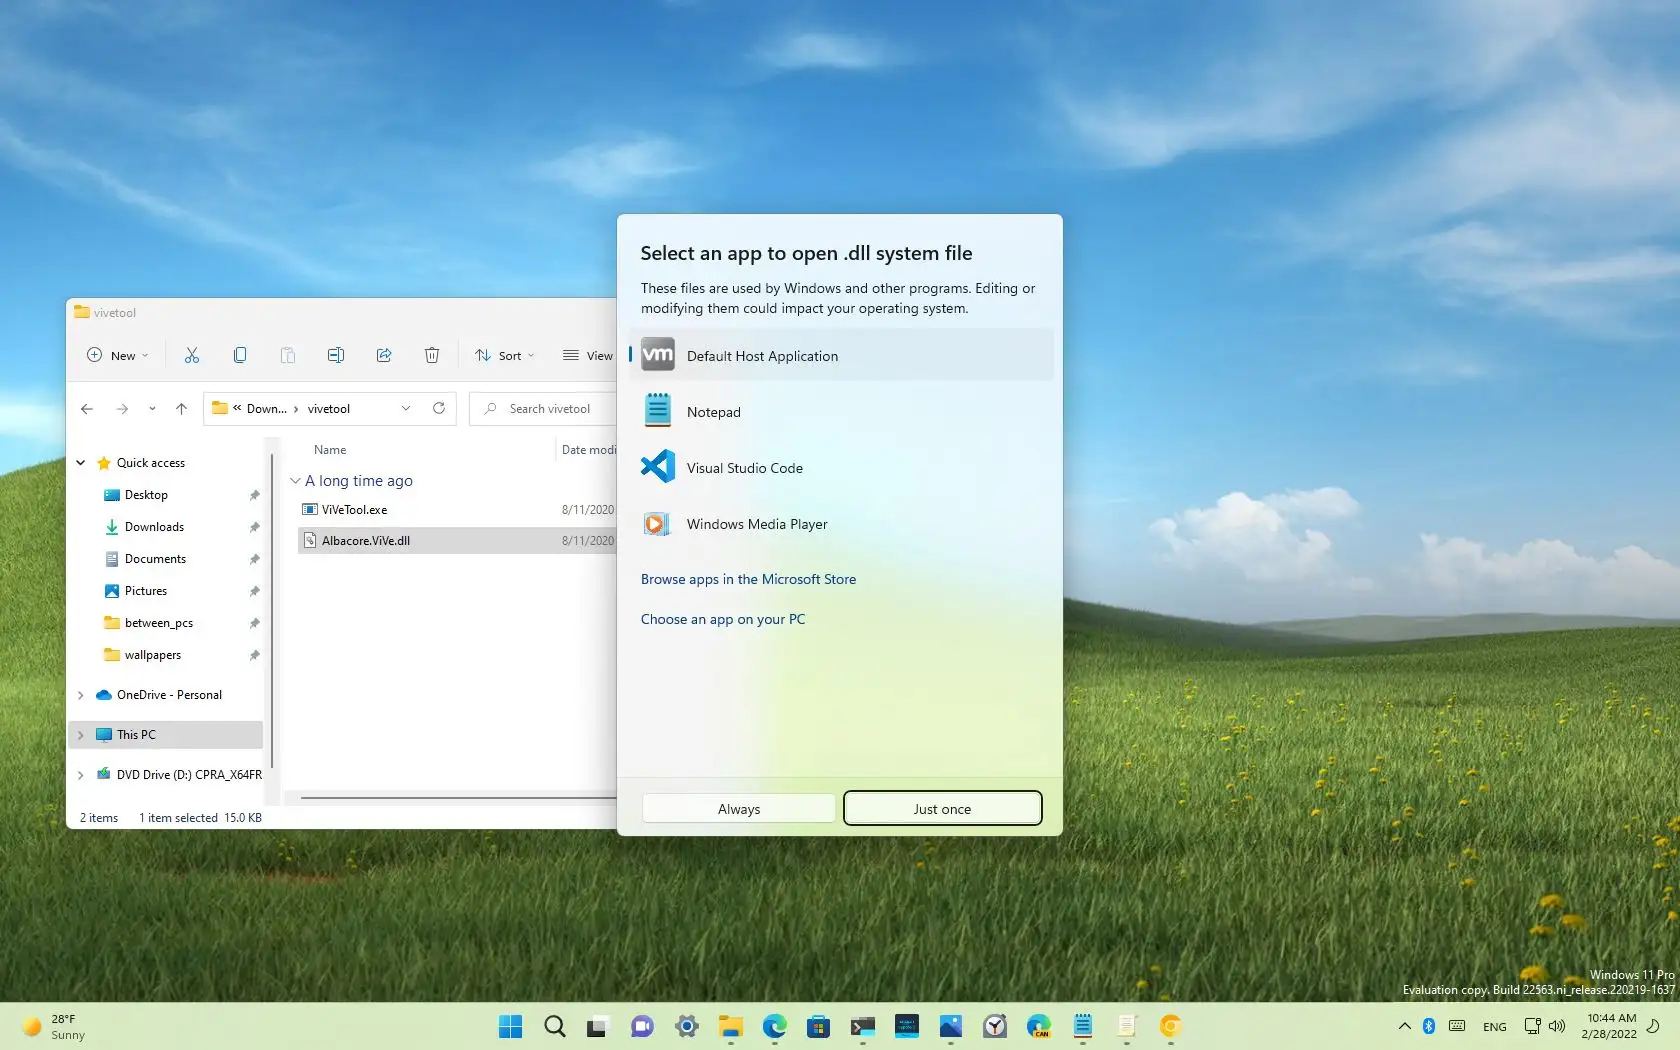 Windows 11 vil få et nytt "Åpne med" brukergrensesnitt for å velge appen for filtypen